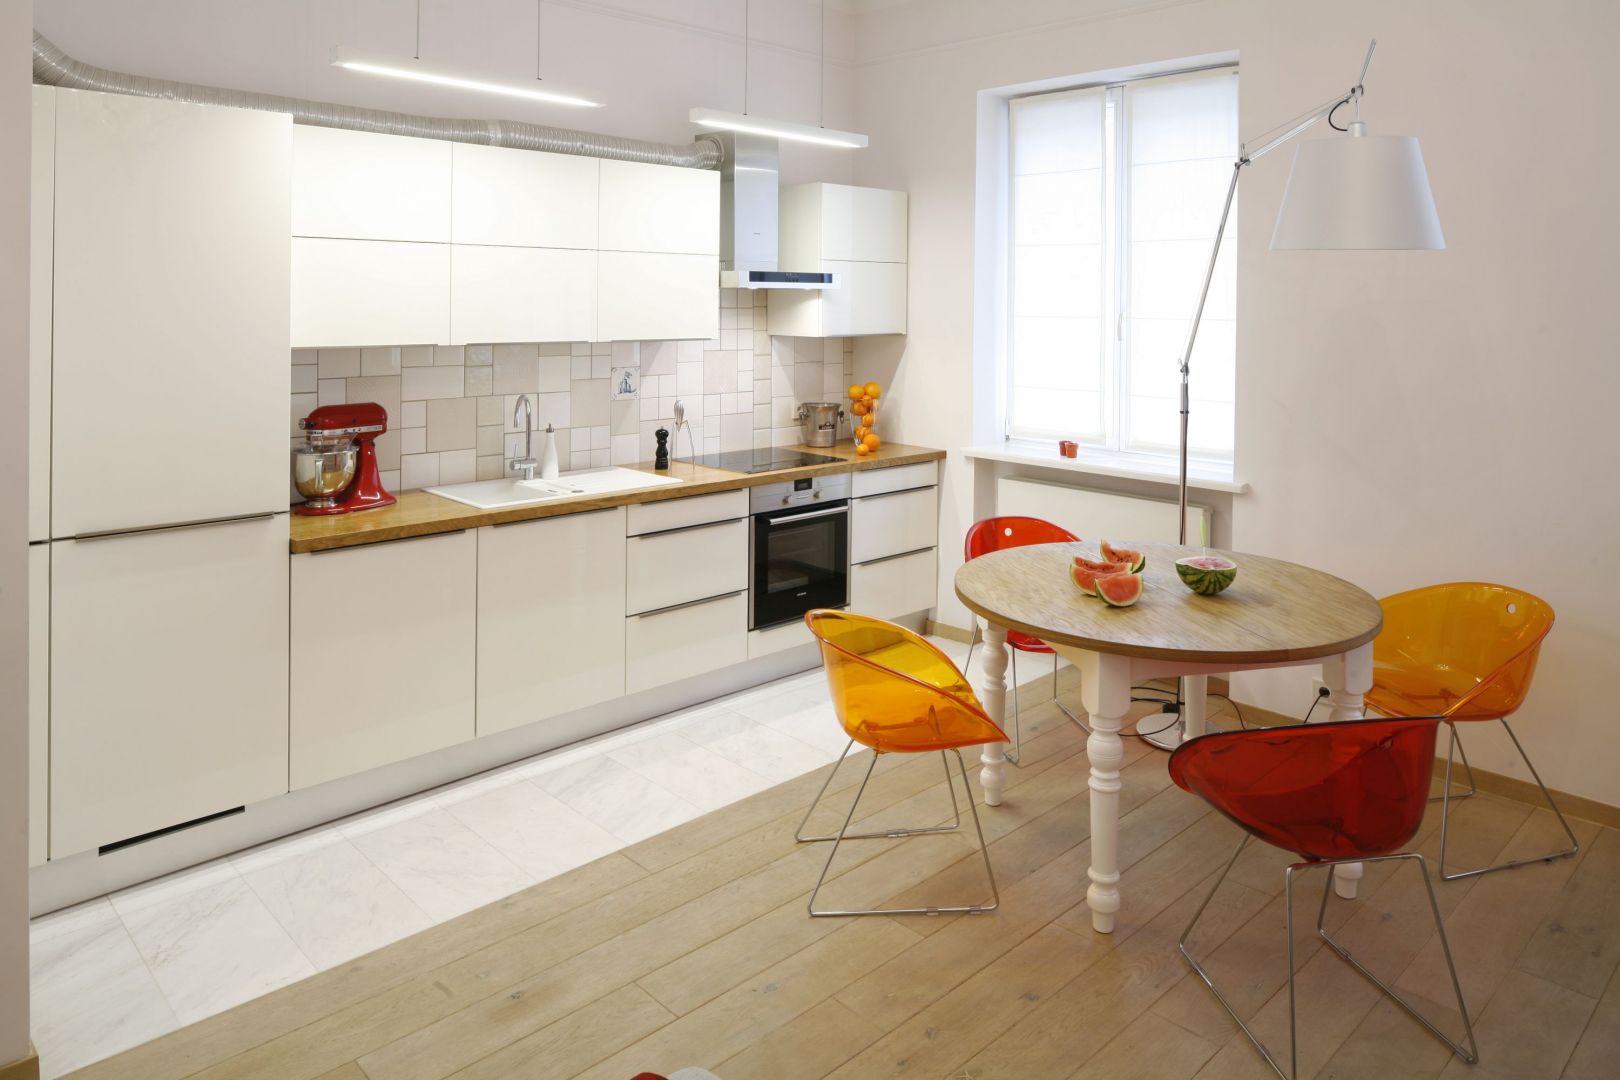 W otwartej na salon kuchni zdecydowano się na zabudowę kuchenną na jedną ścianę.  Szafki górne w białym kolorze nie tylko zapewniają sporo miejsca do przechowywania, ale też optycznie powiększają przestrzeń. Projekt: Agnieszka Żyła. Fot. Bartosz Jarosz.